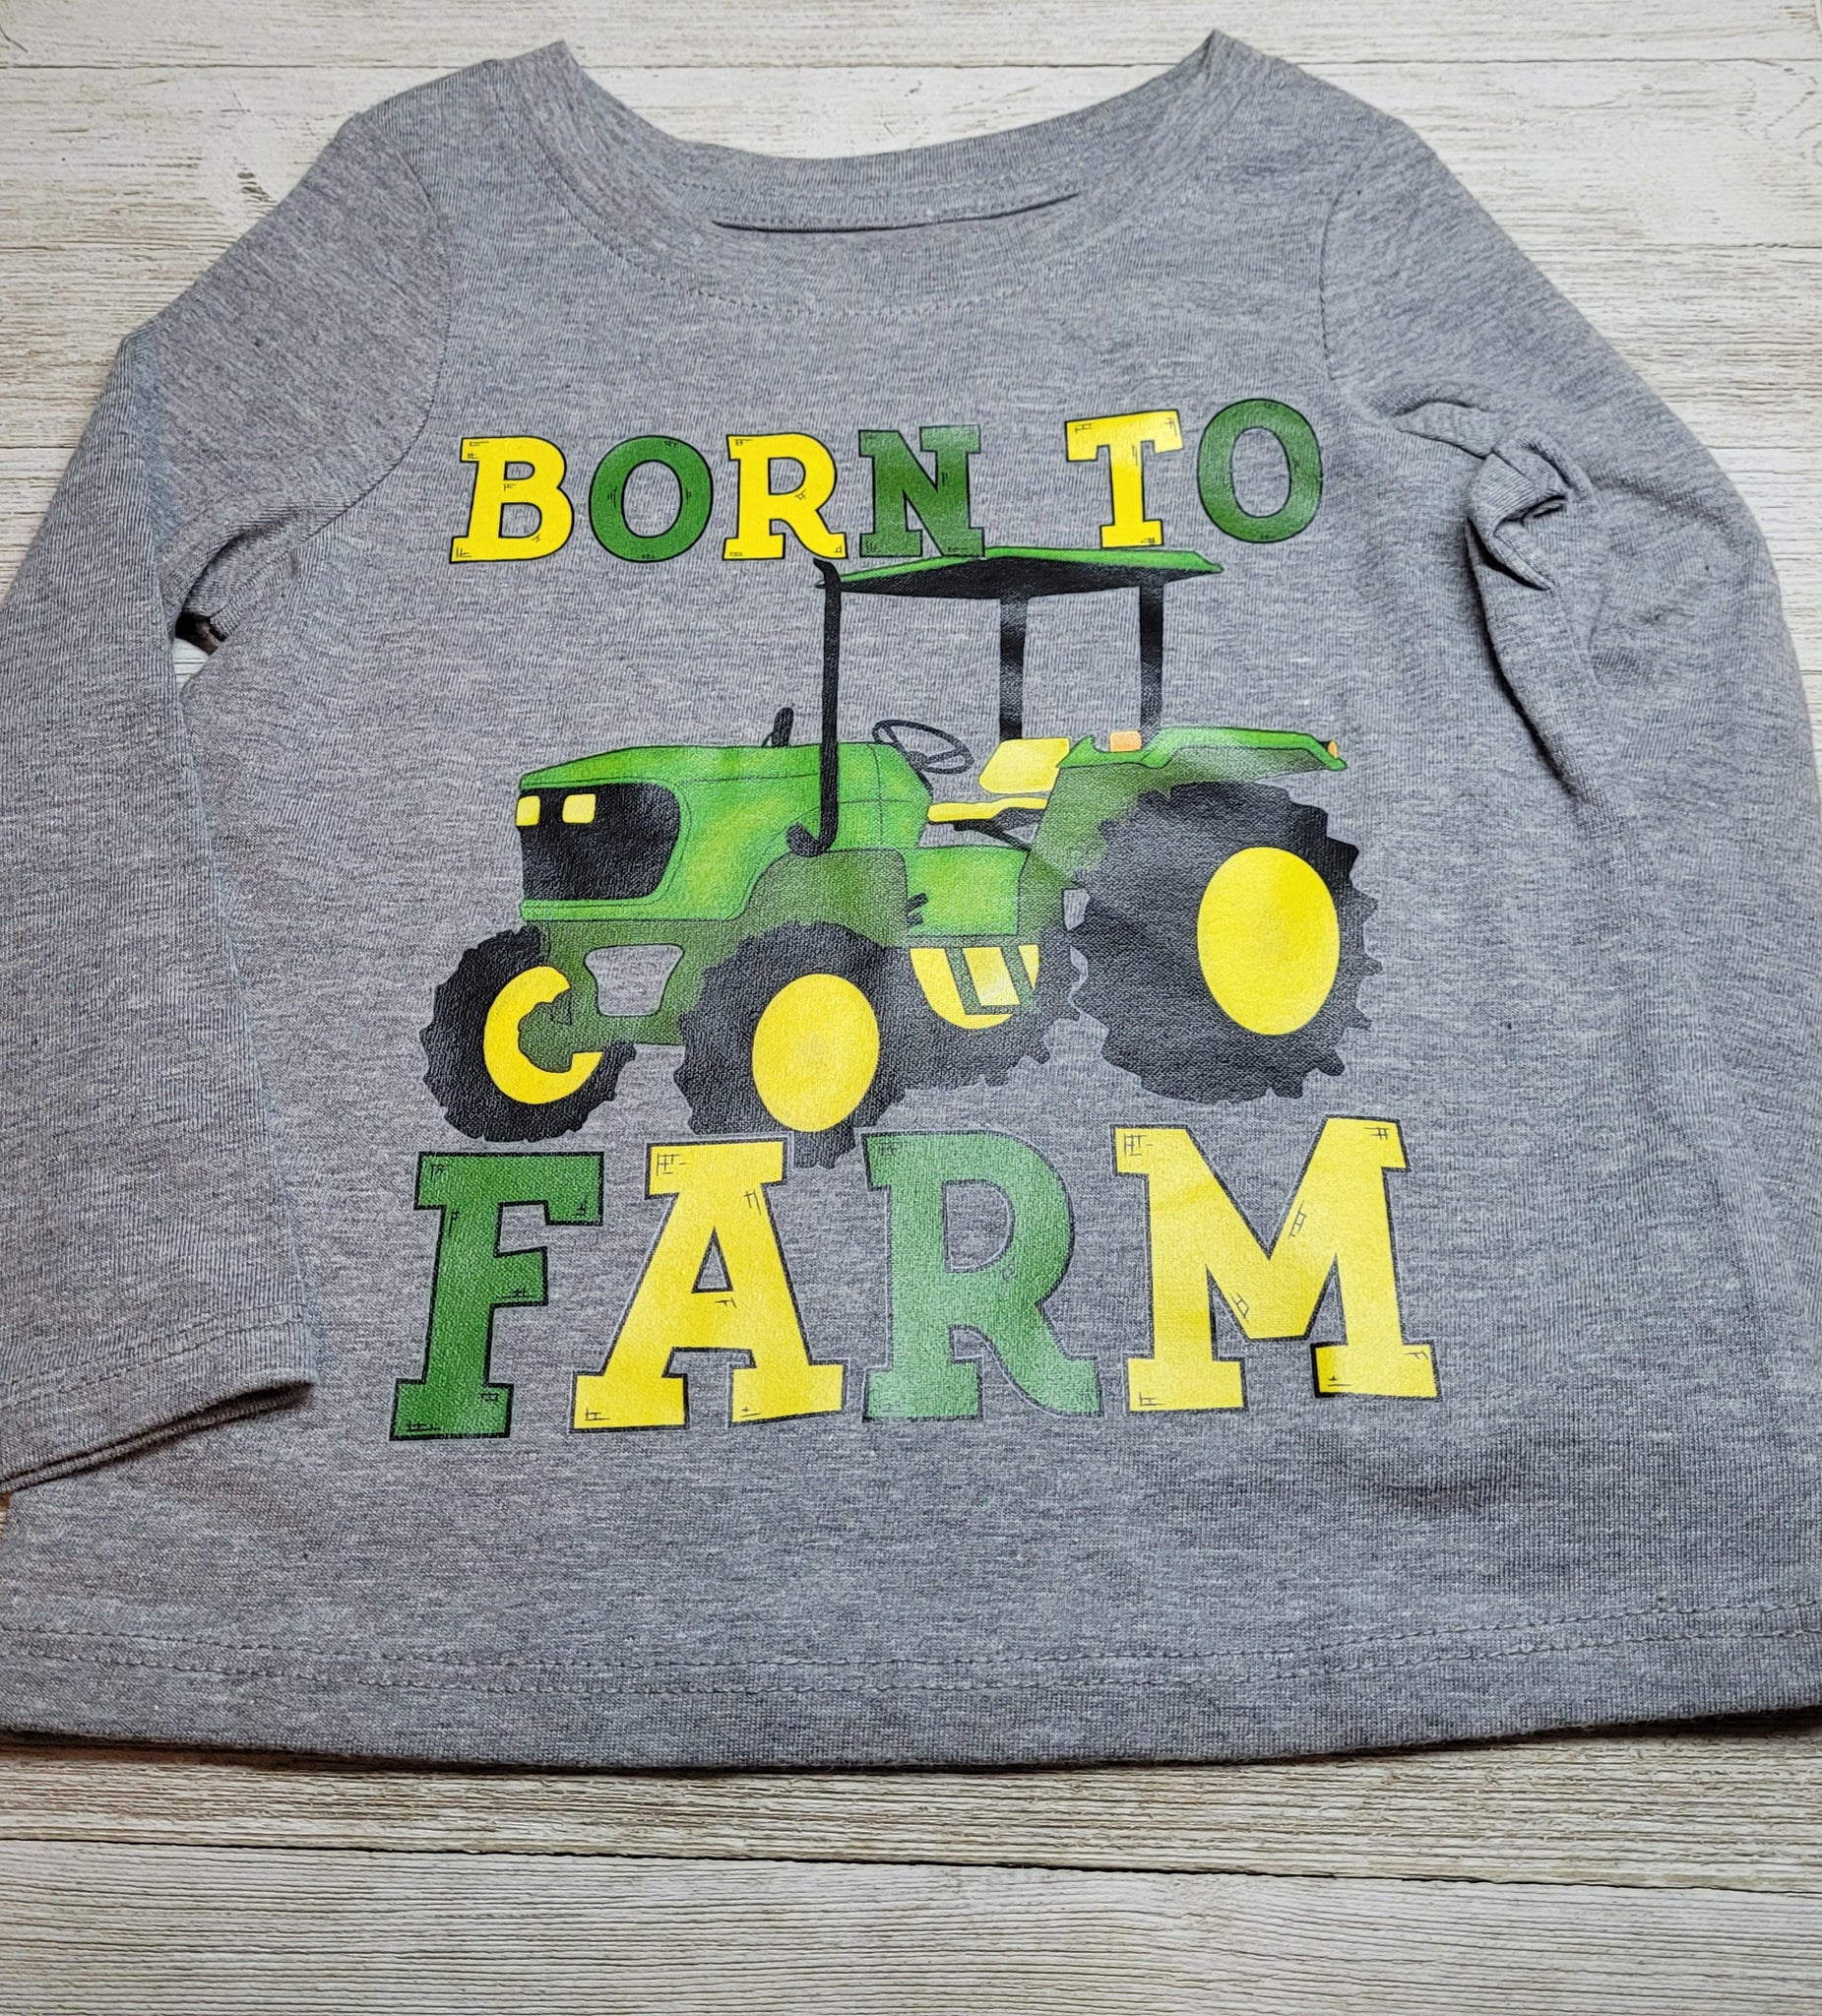 "Born to Farm" tshirt